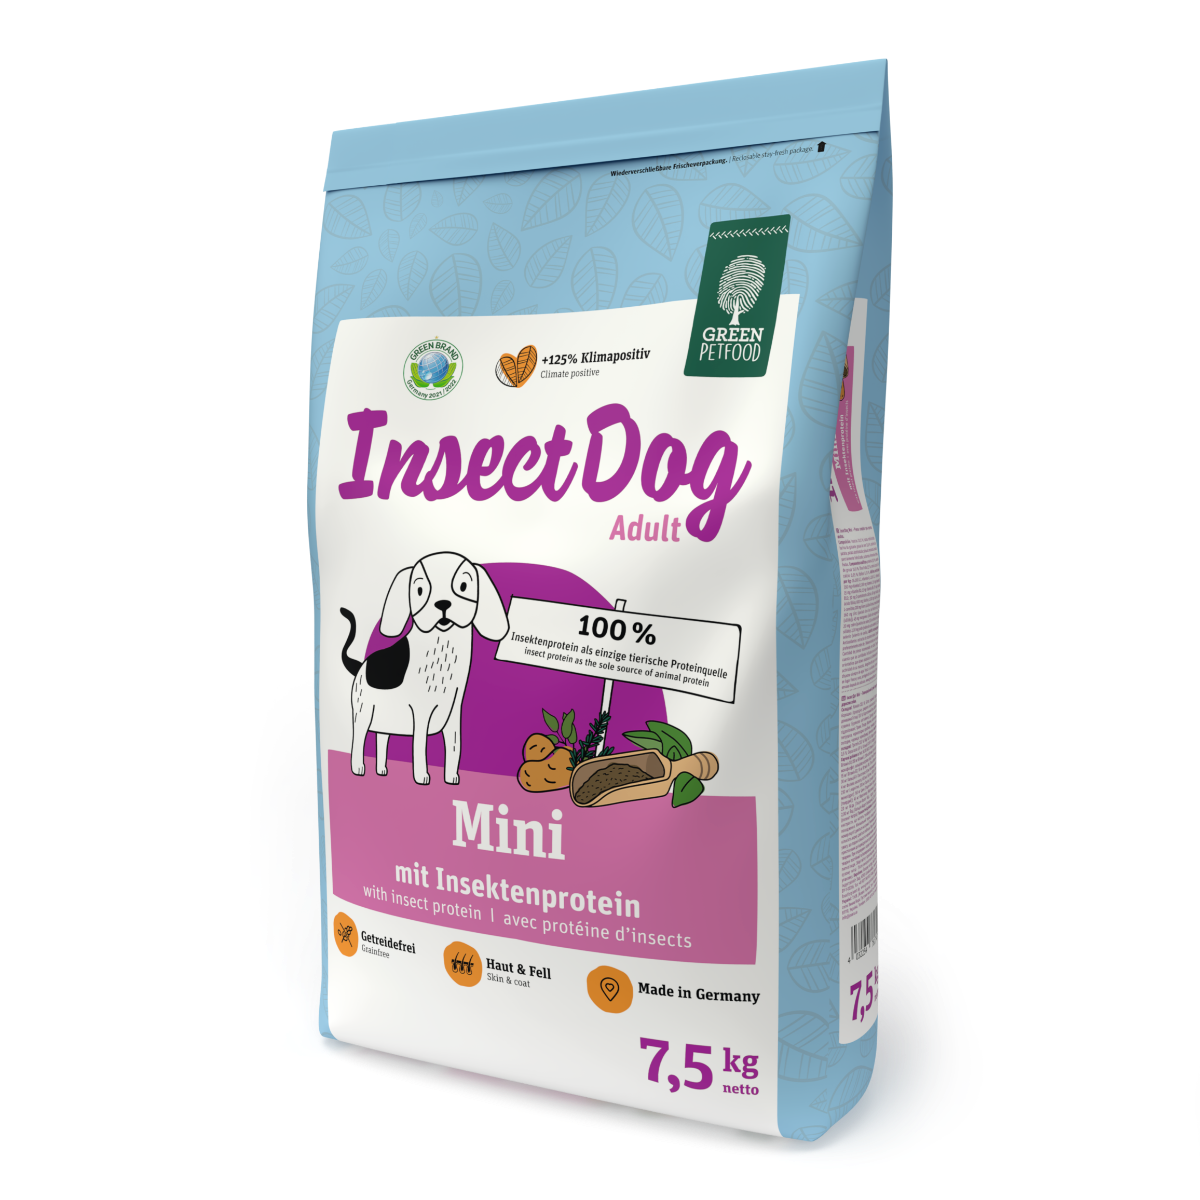 InsectDog Mini 2x 7,5kg Green Petfood® von Green Petfood